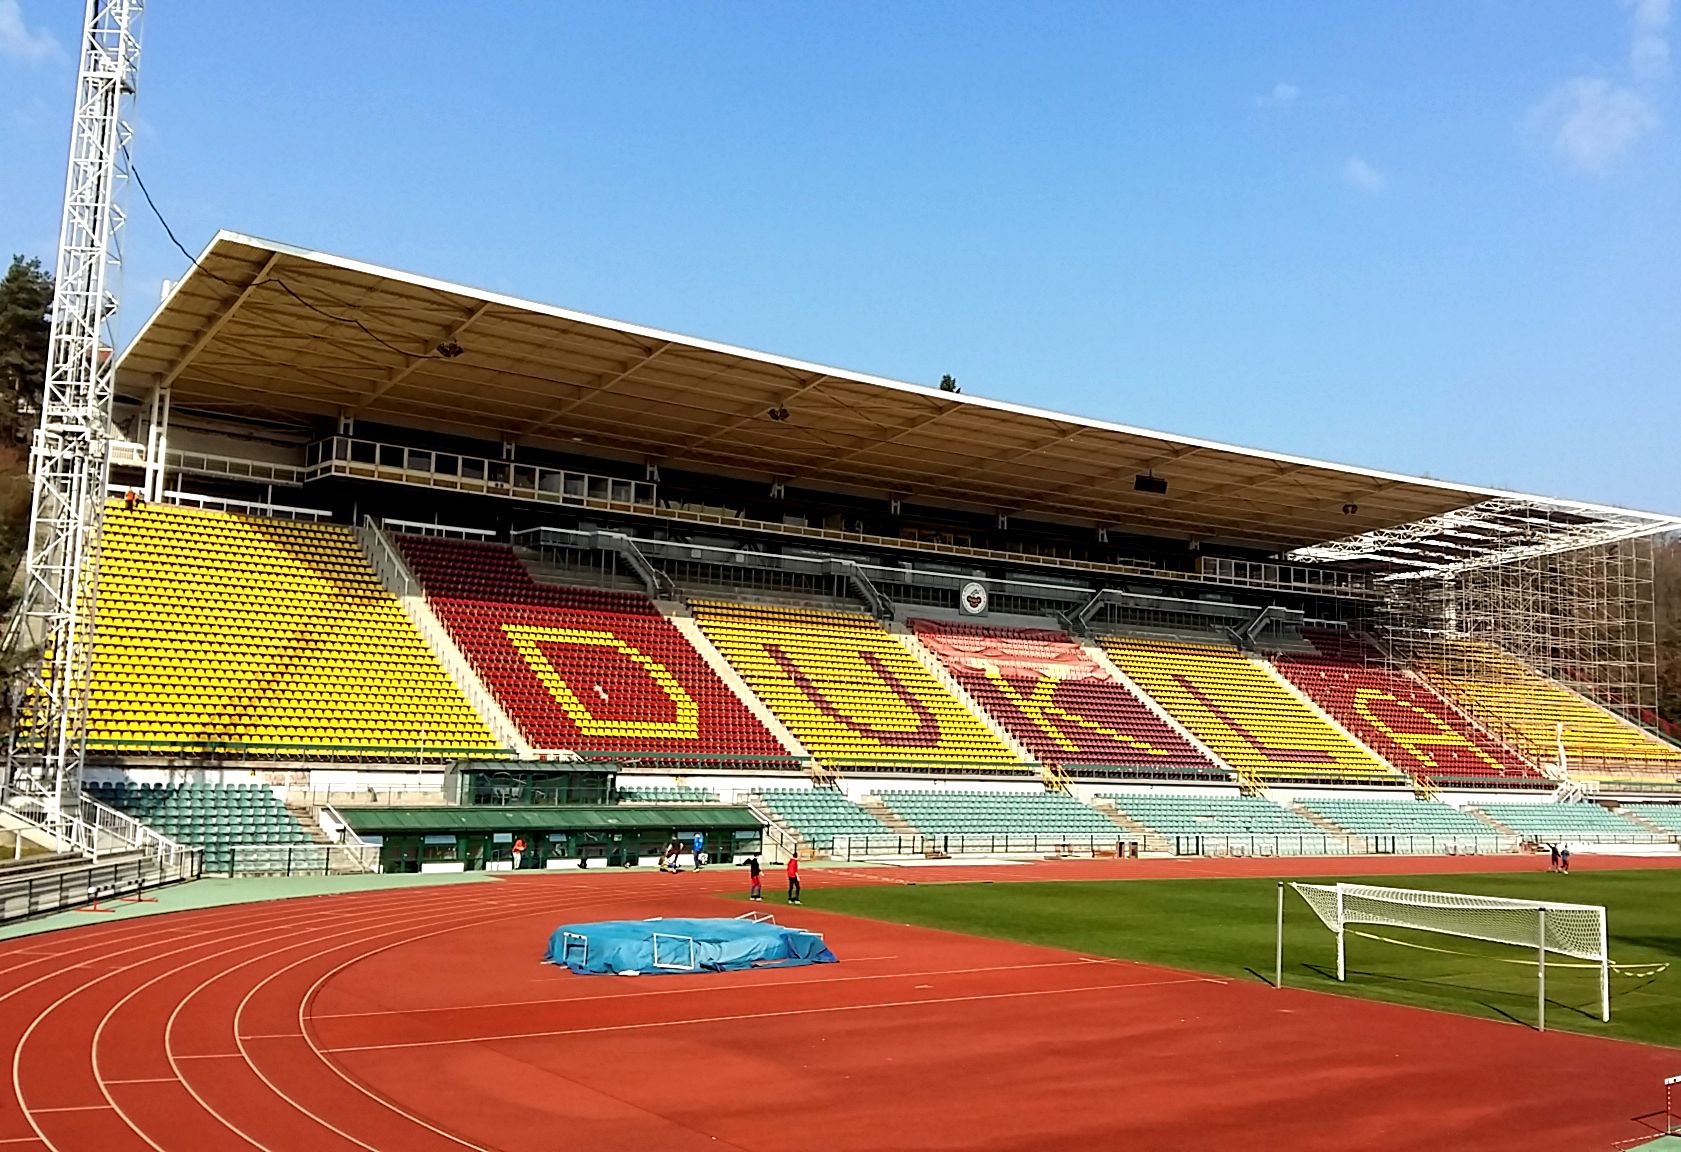 Stadion Juliska rekonstrukce tribuny - Construcții industriale